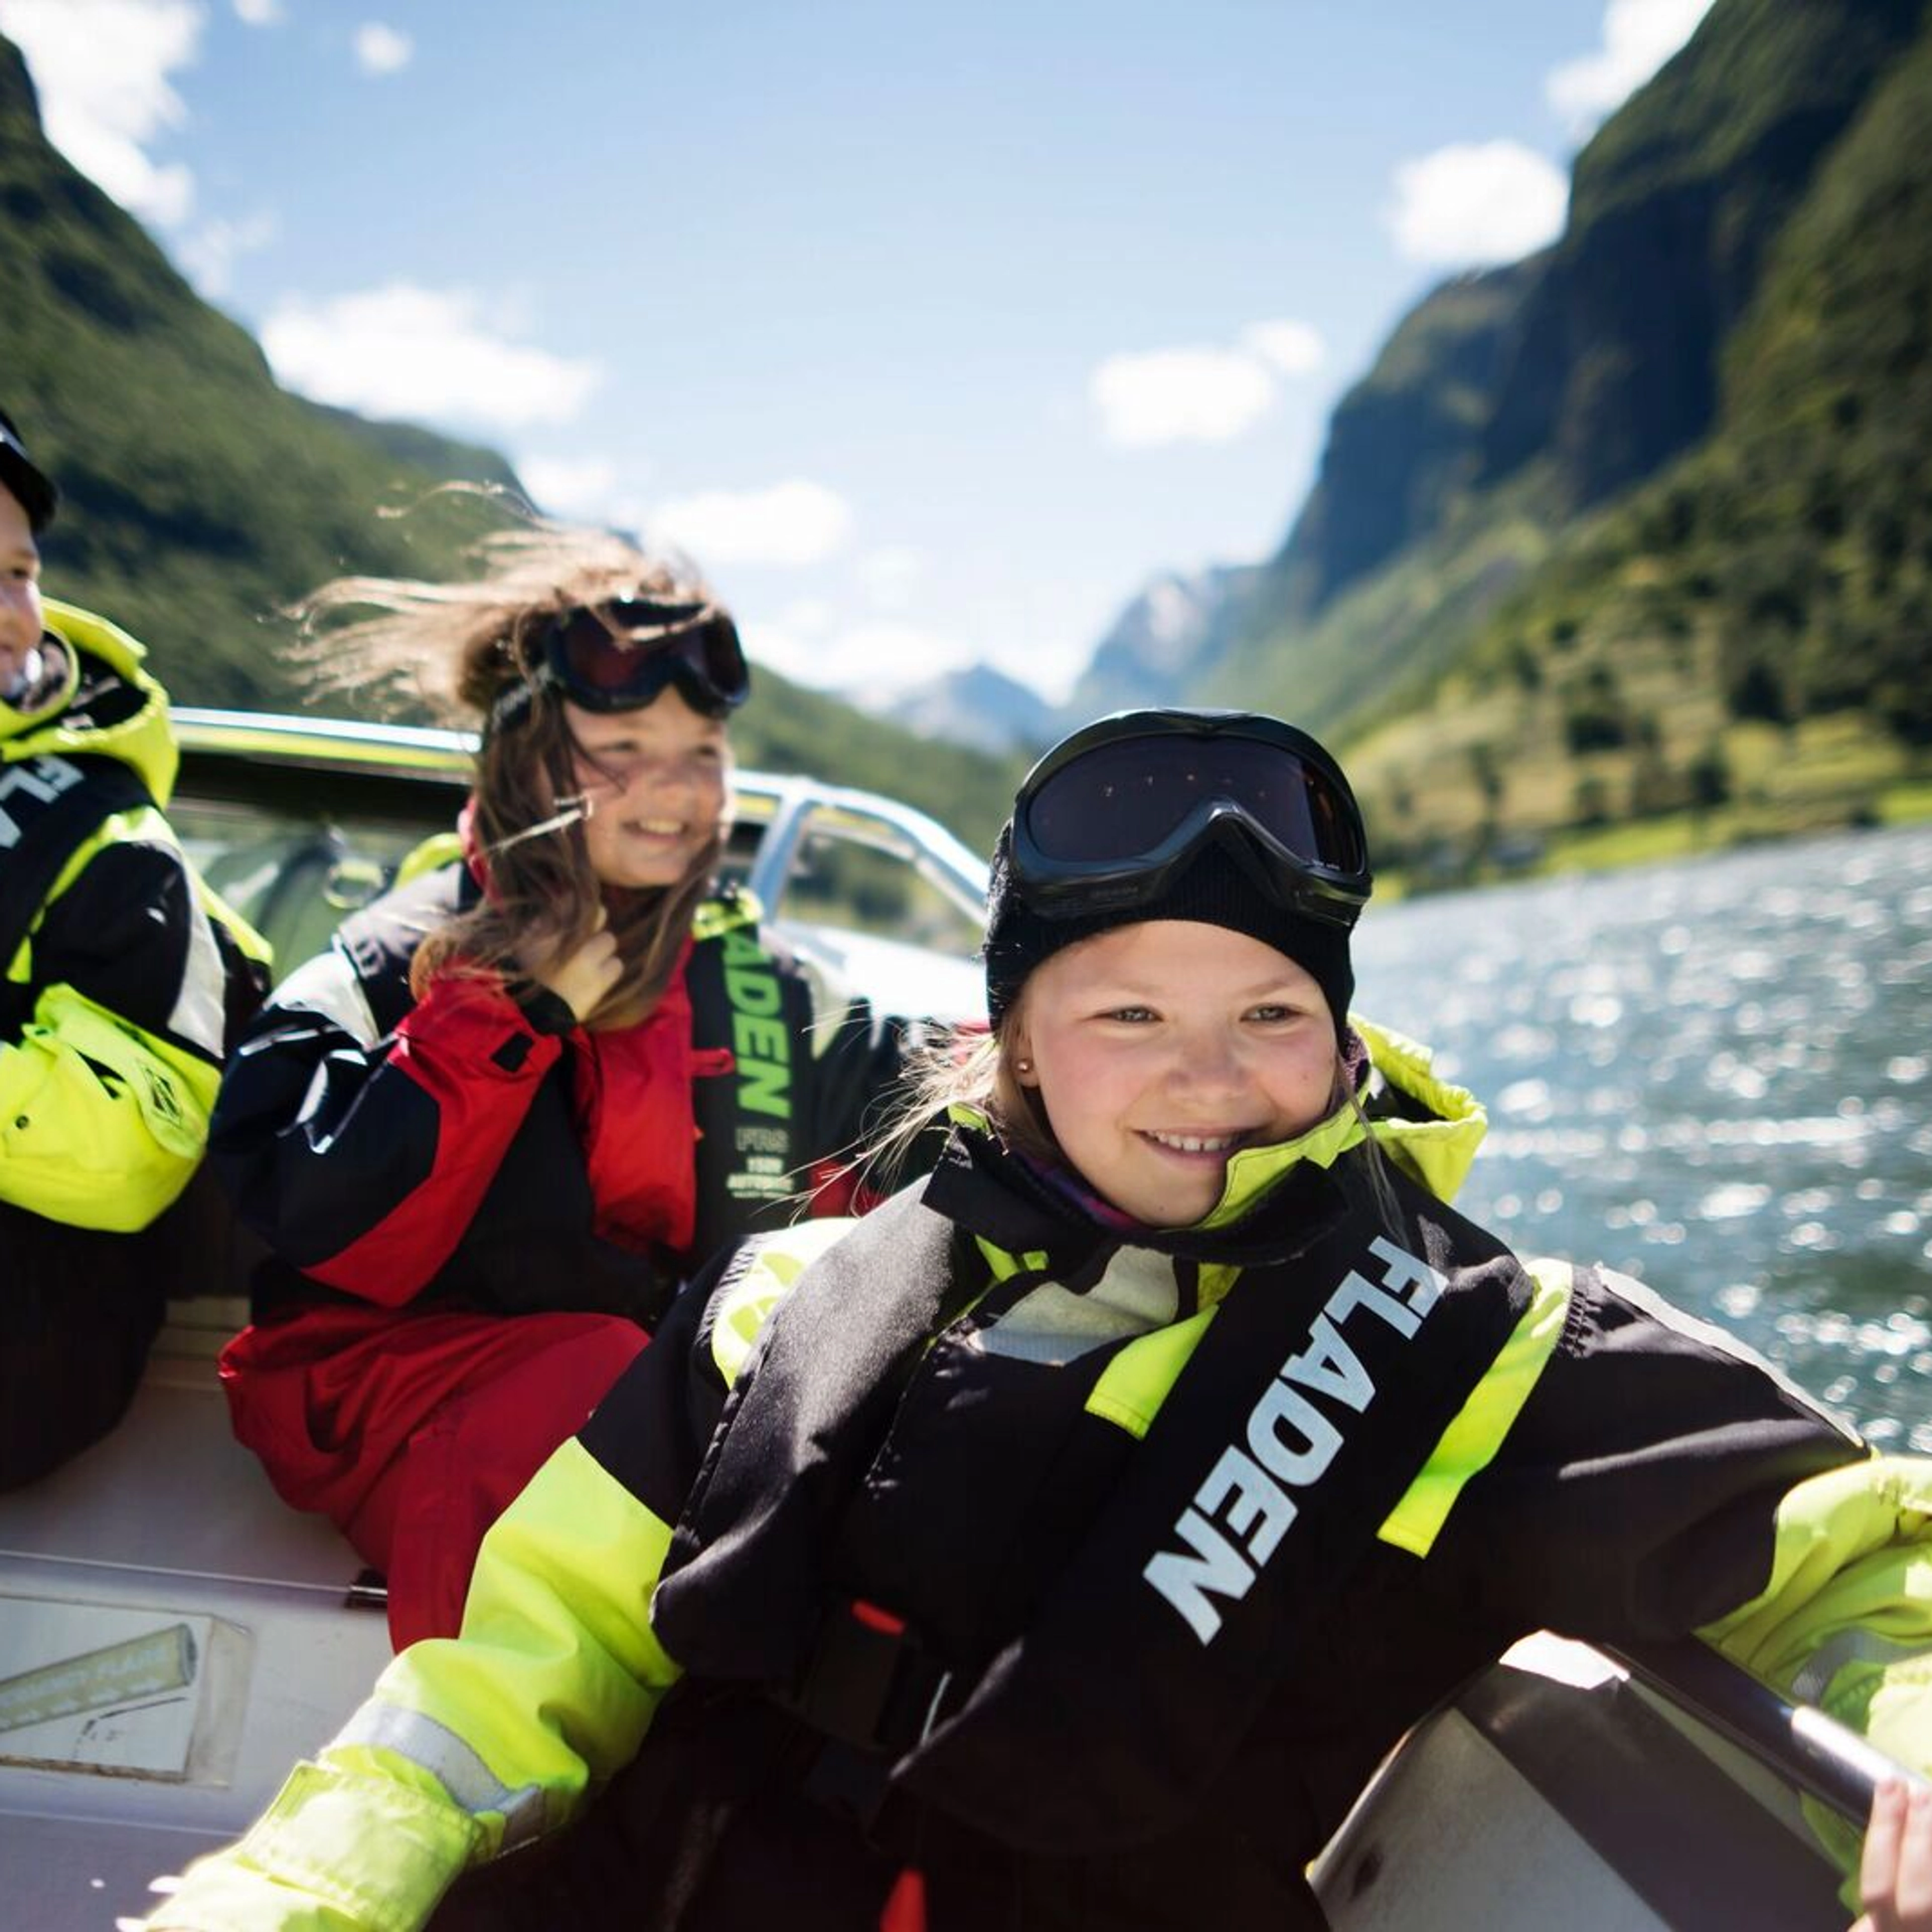 Familienfreundlich – Heritage RIB-Bootstour in Flåm, Norwegen